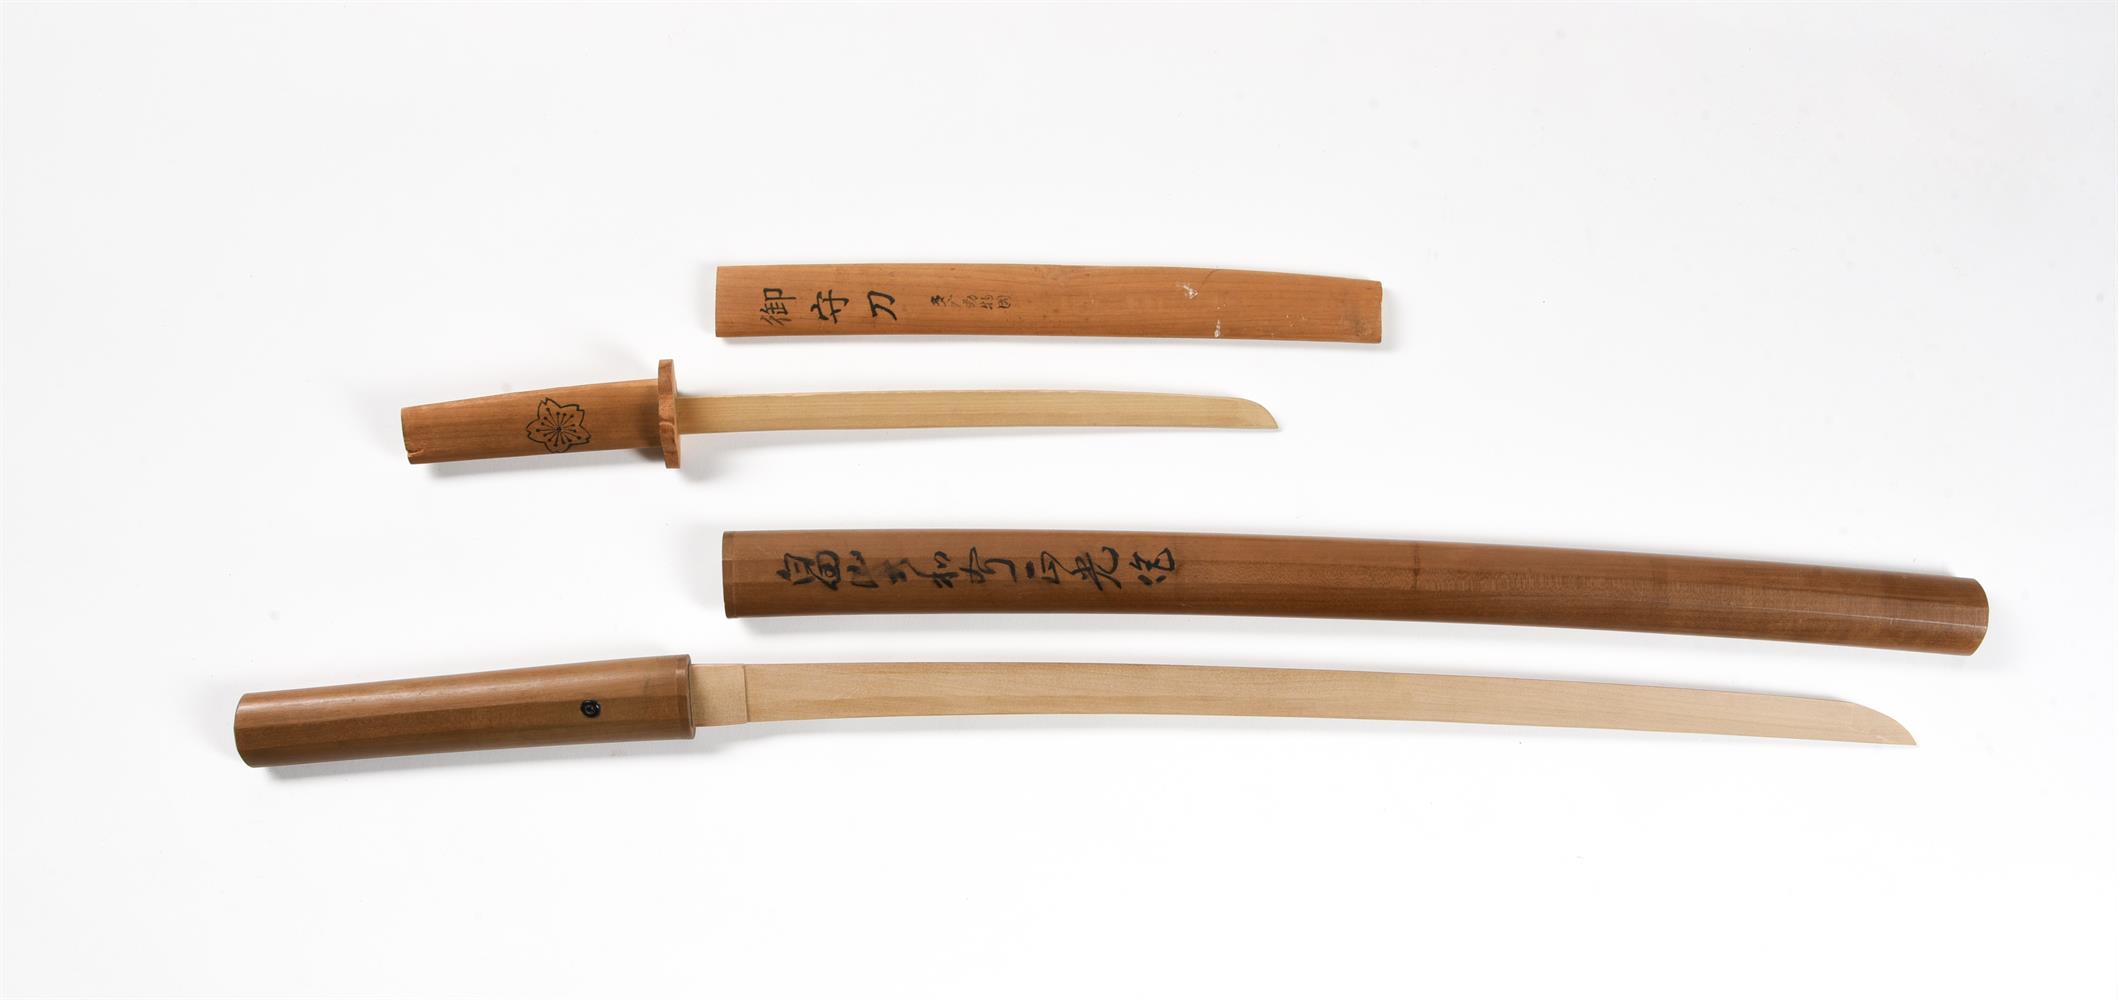 A Japanese Wakizashi blade - Image 3 of 4